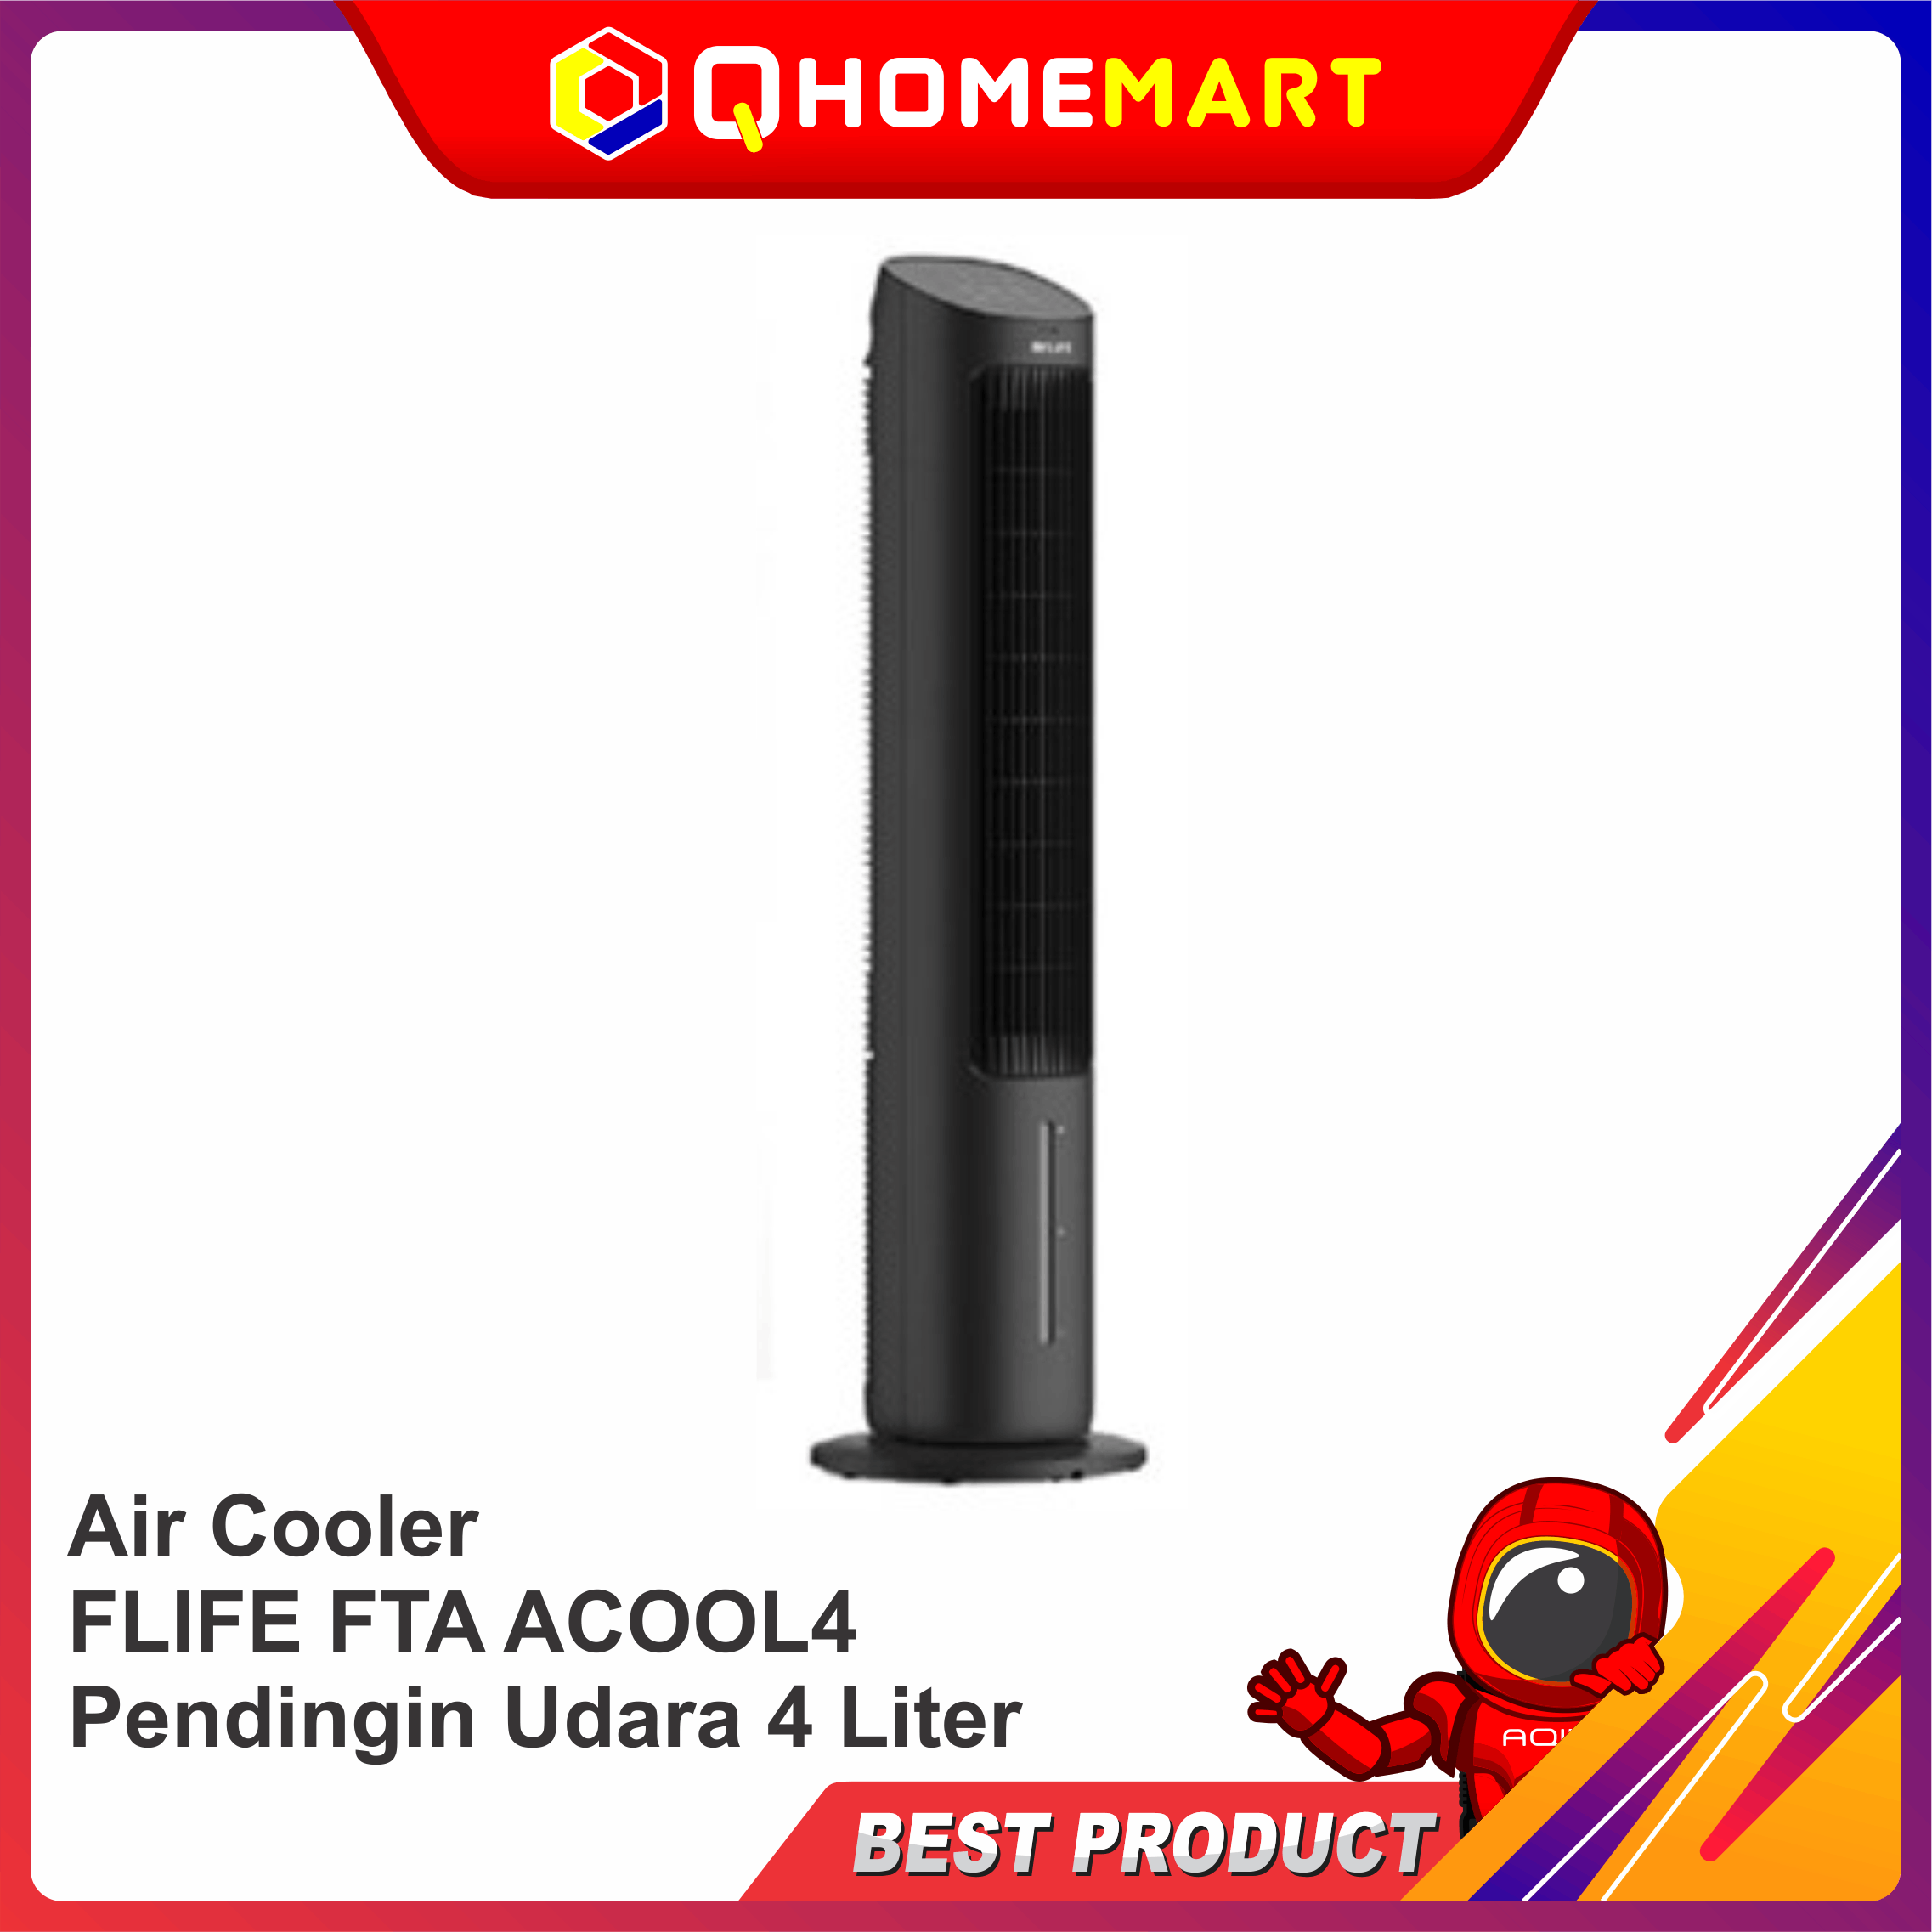 Air Cooler FLIFE FTA ACOOL4 Pendingin Udara 4 Liter